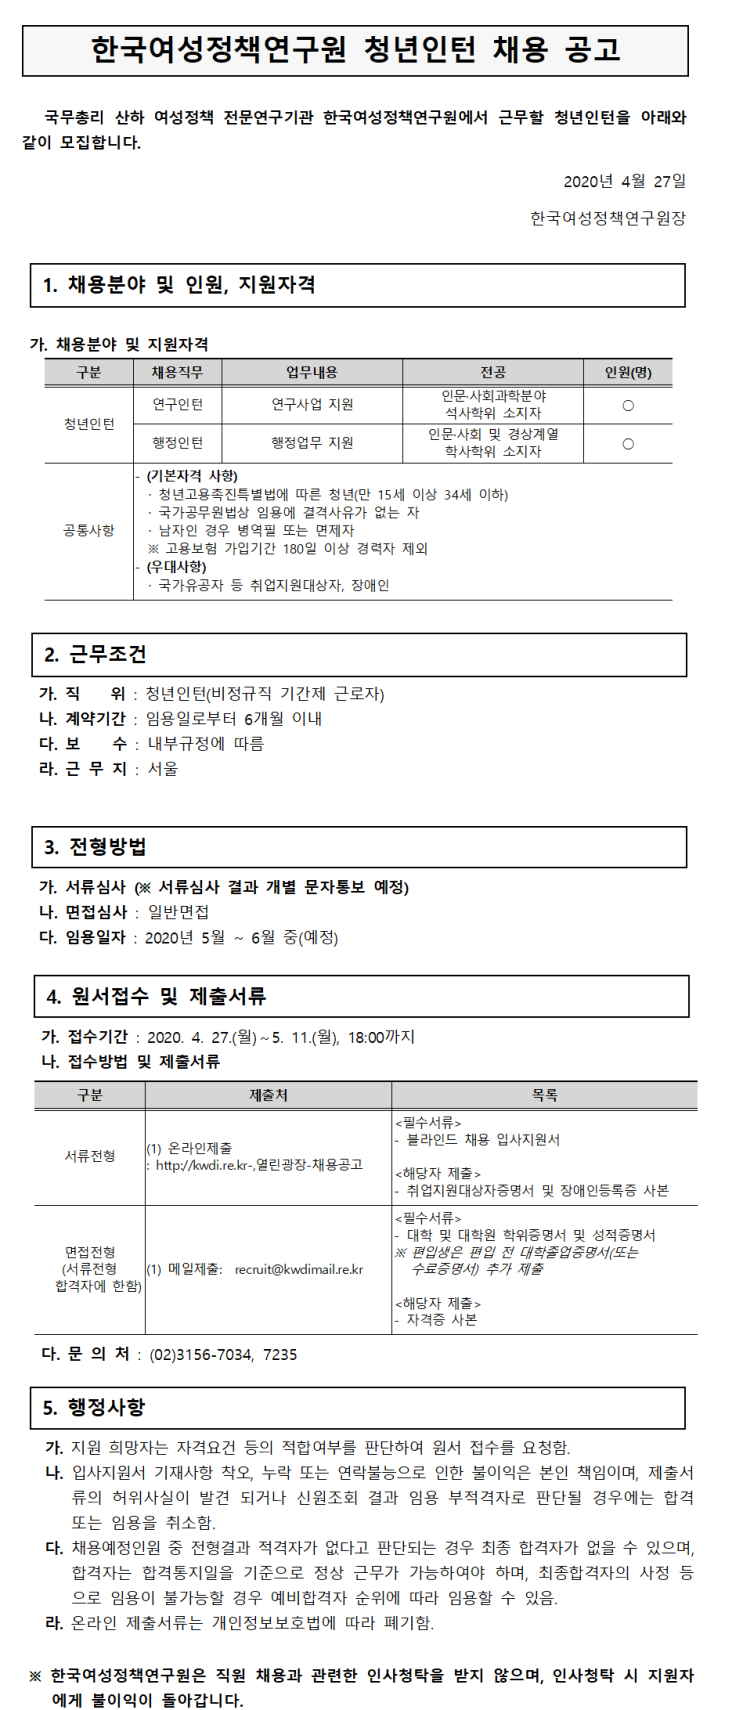 [채용][한국여성정책연구원] 2020년 제1차 청년인턴(연구/행정) 채용